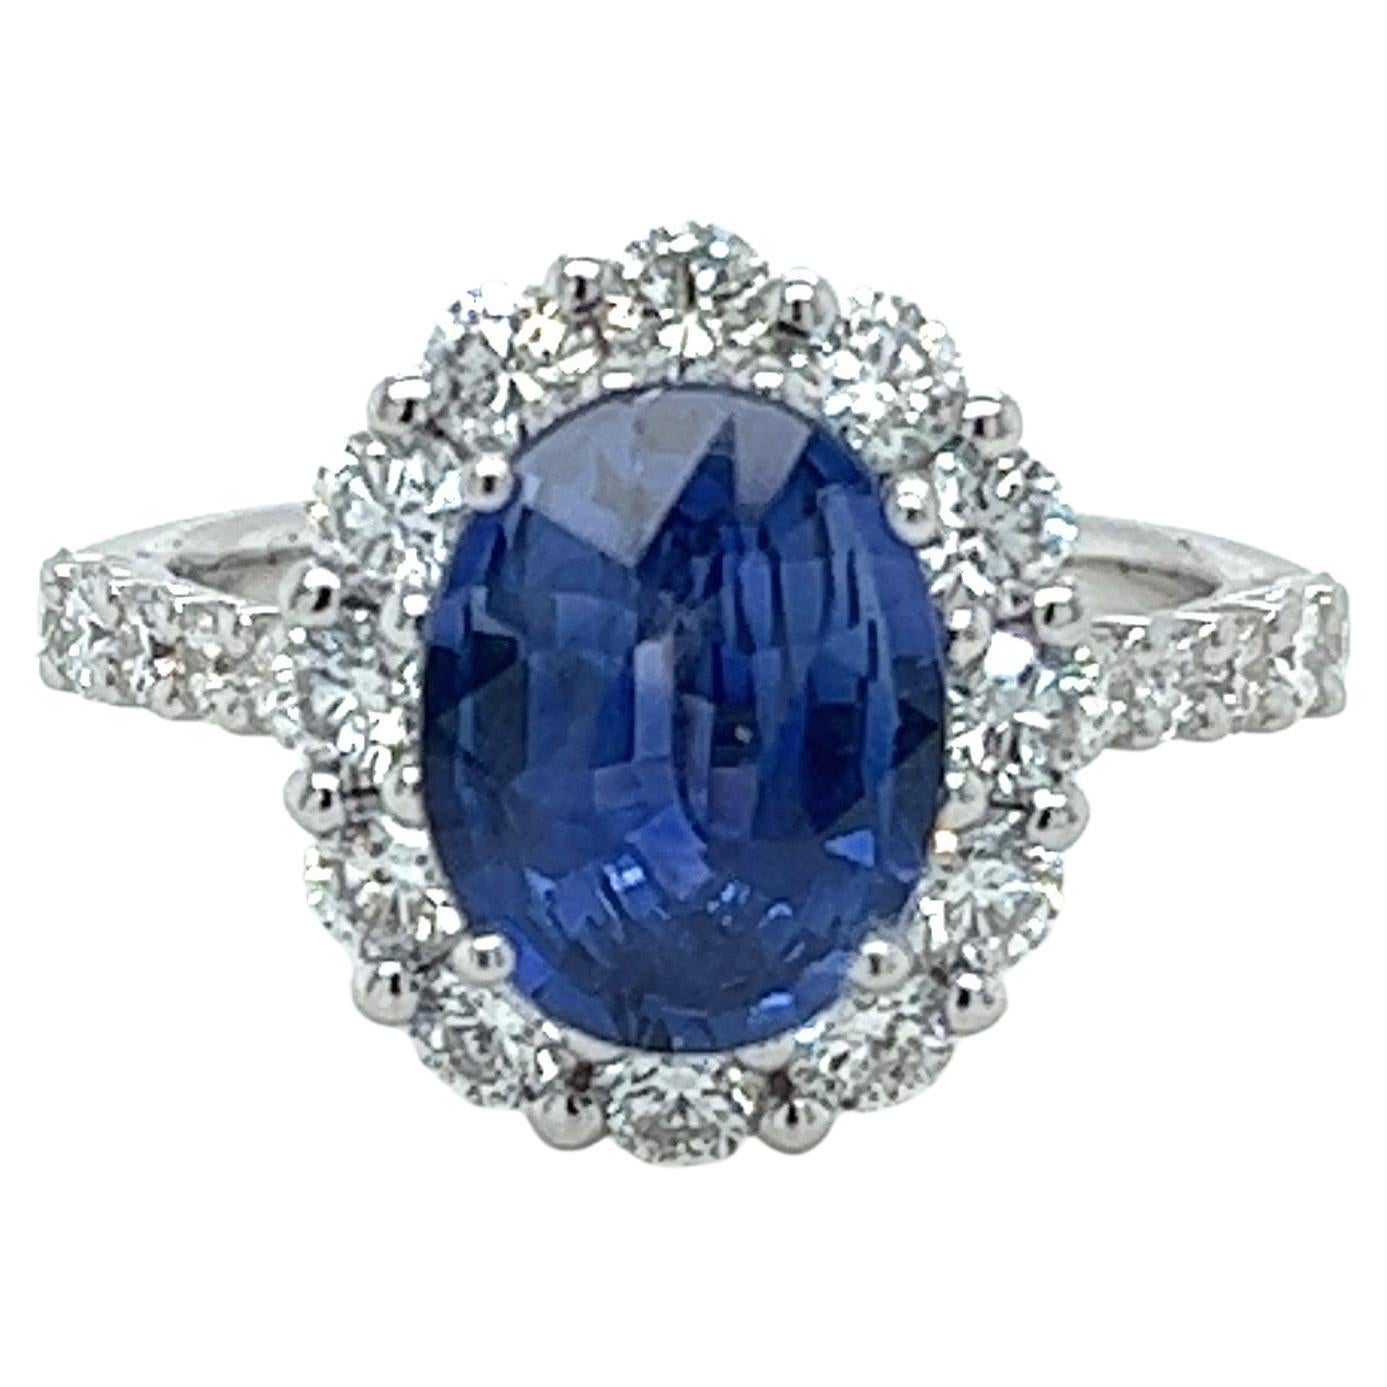 GIA 2.96 Carat Lady Diana Ceylon Sapphire & Diamond Ring in 18 Karat White Gold